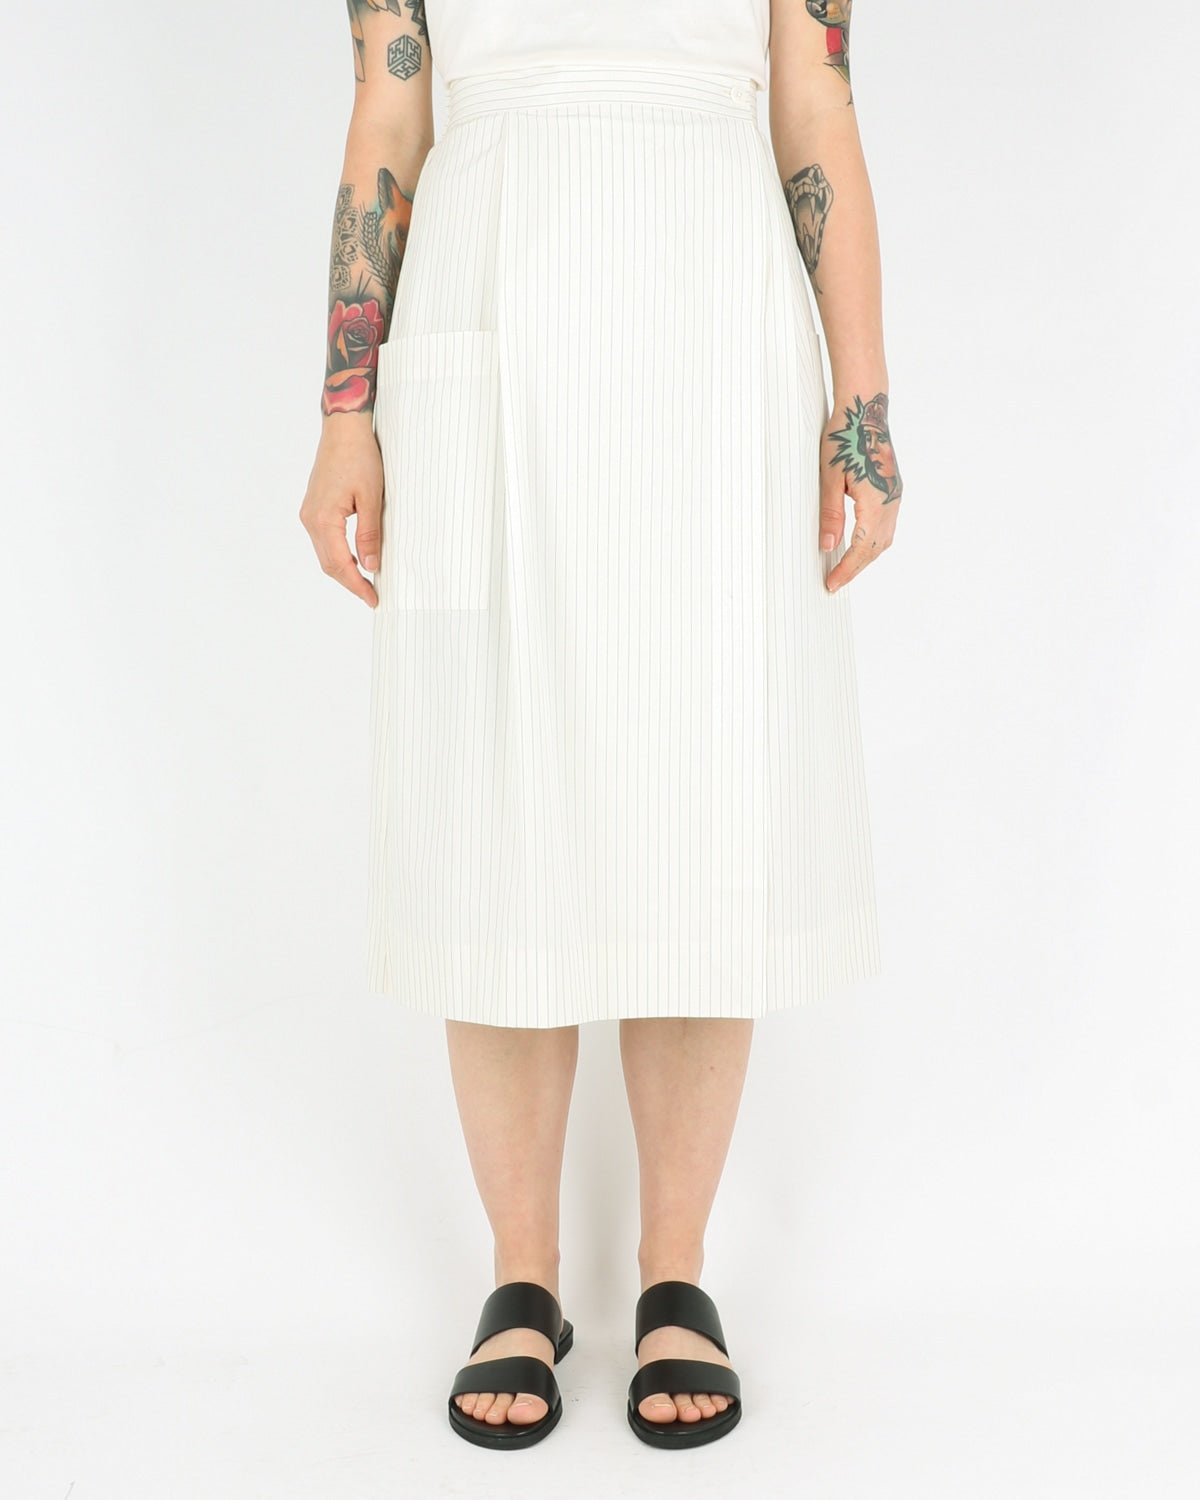 norse projects women_julietta light cotton skirt_ecru_view_1_3